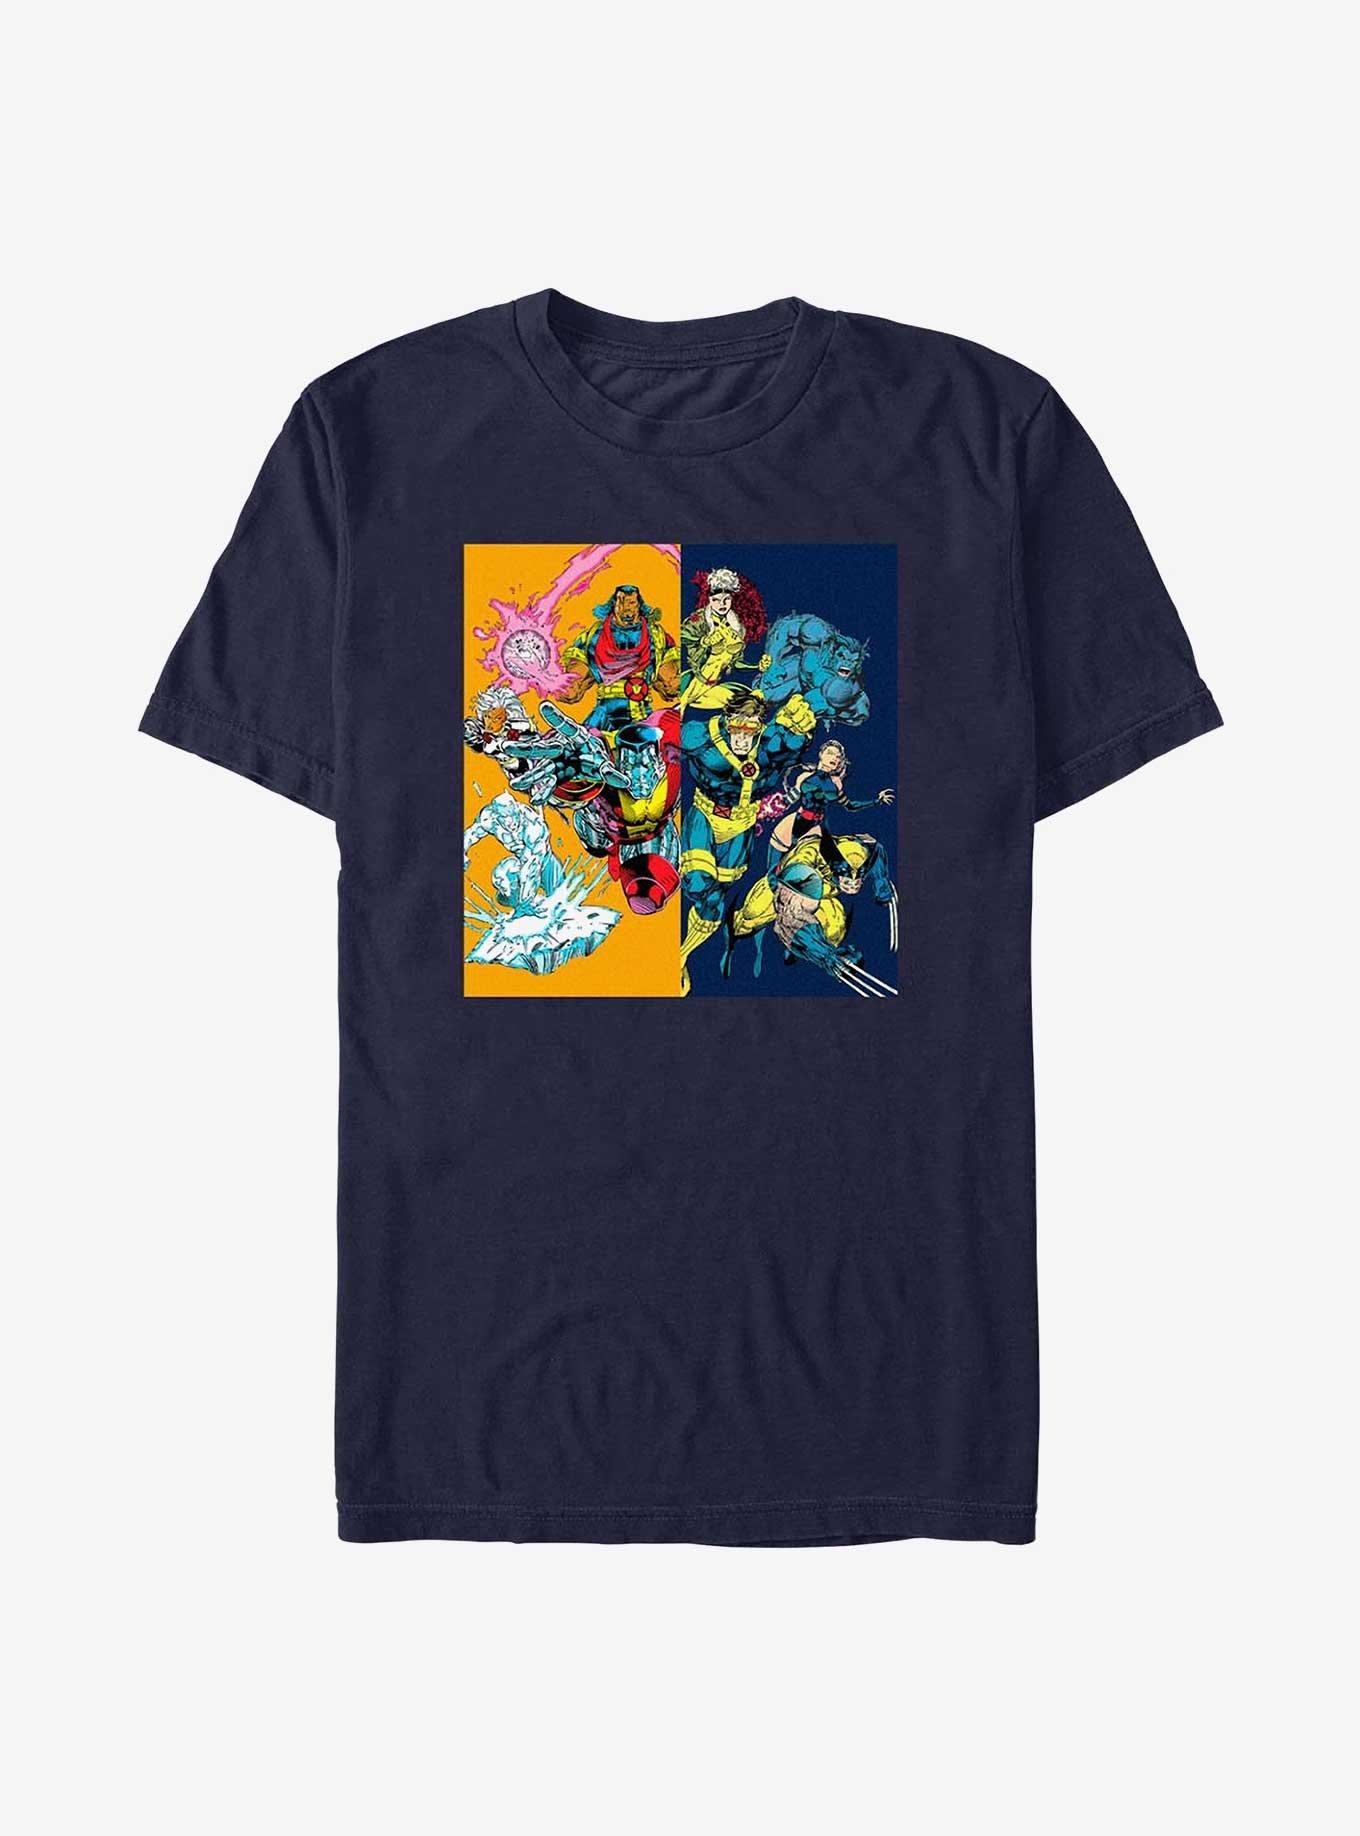 X-Men Gold & Blue T-Shirt, , hi-res